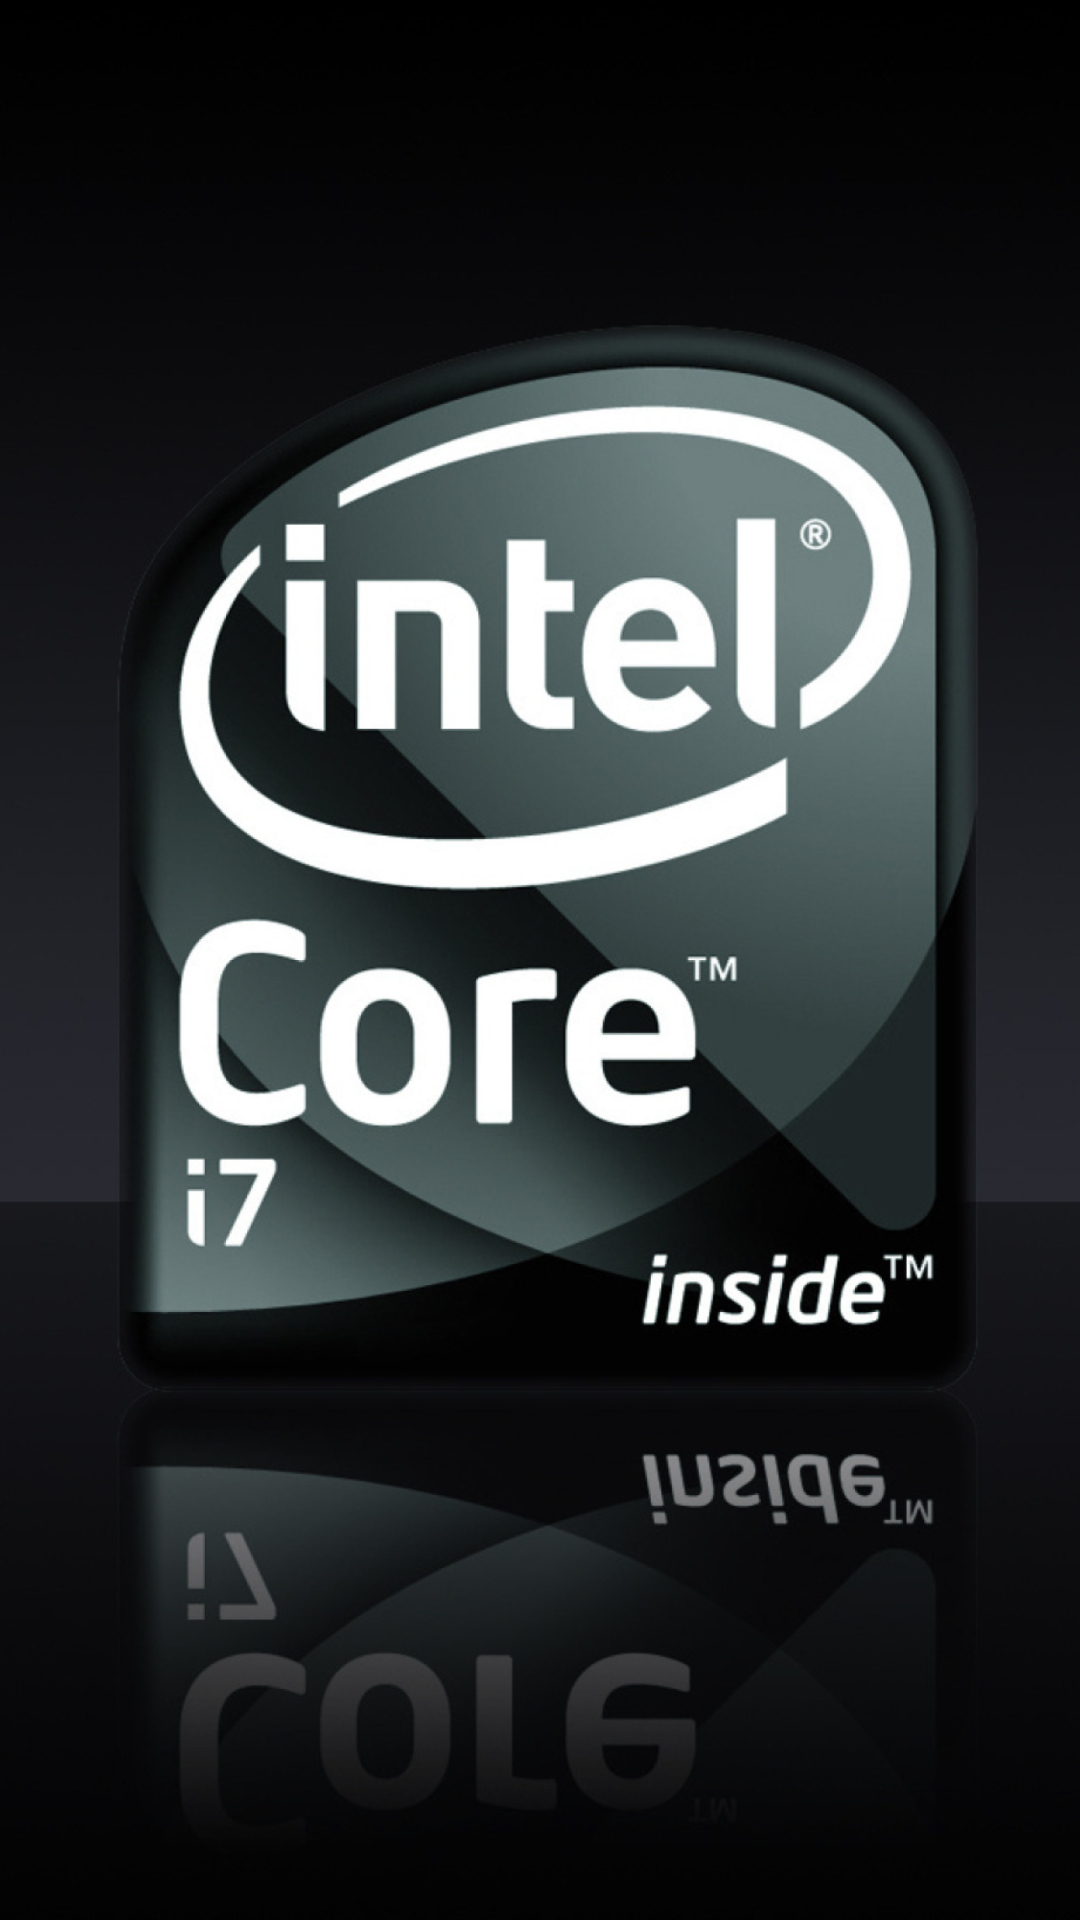 Intel Core I7 wallpaper 1080x1920